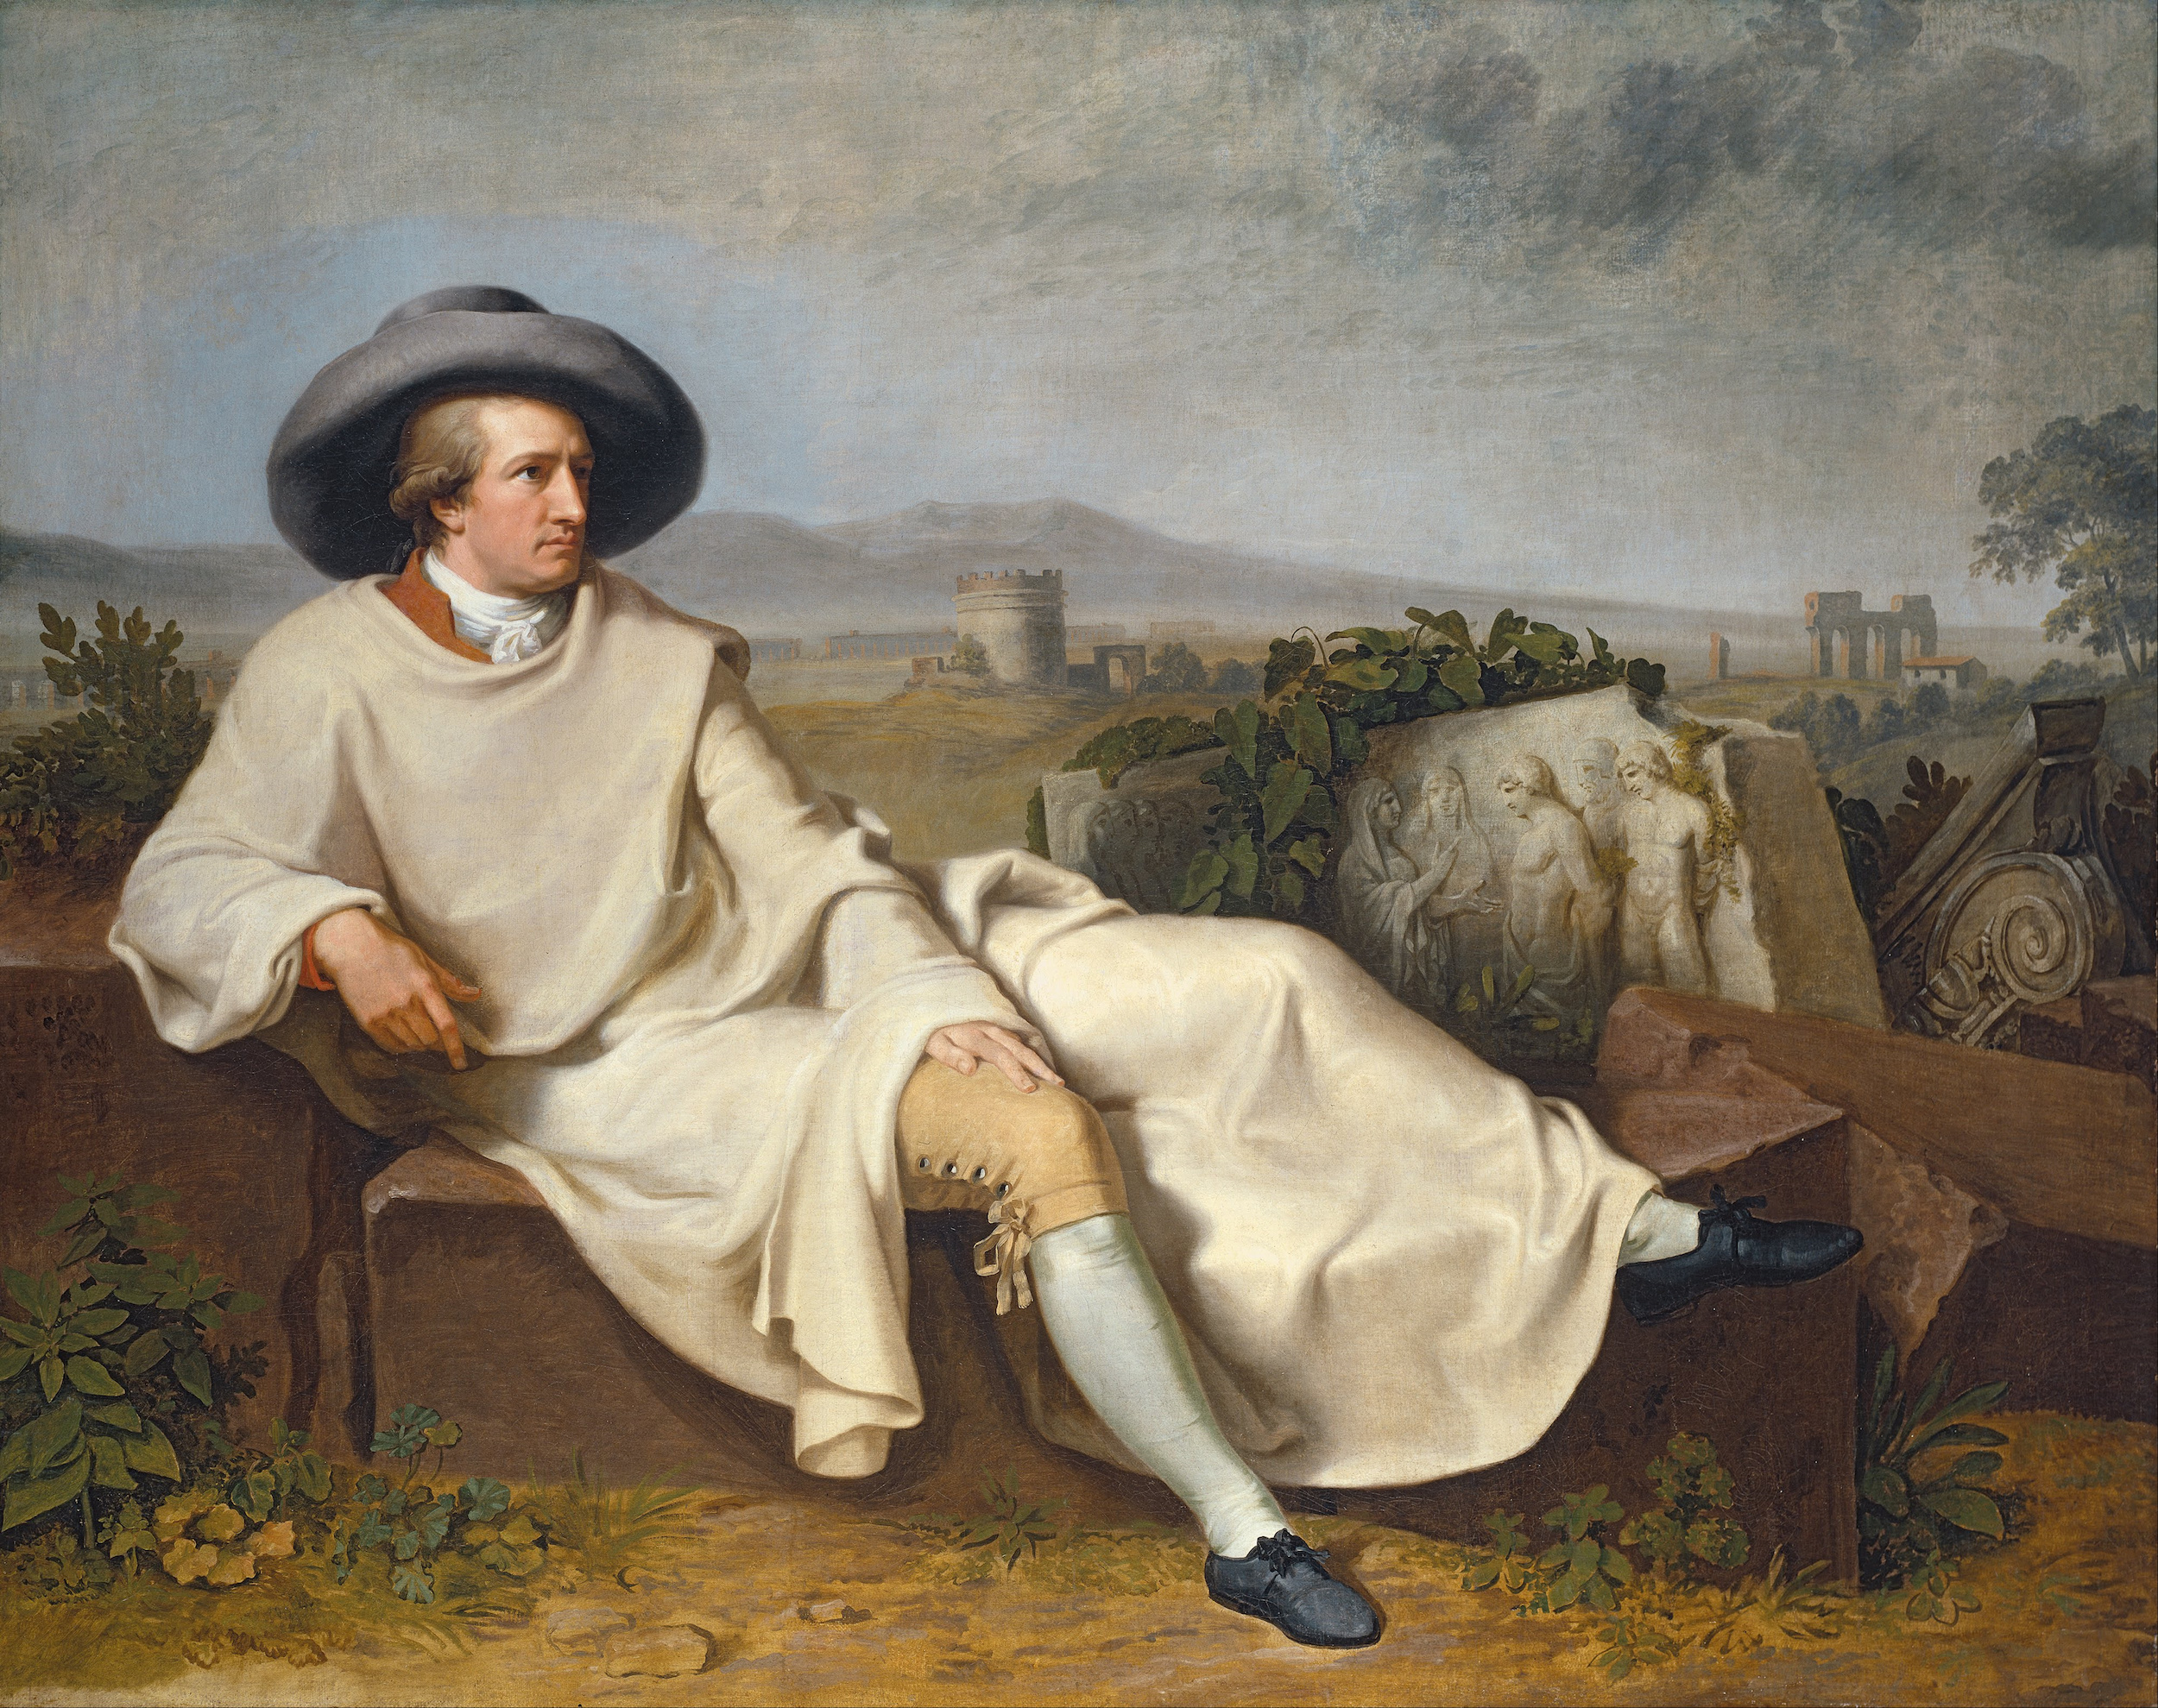 Goethe in der römischen Campagna by Johann Heinrich Wilhelm Tischbein - 1787 - 164 × 206 cm Städel Museum